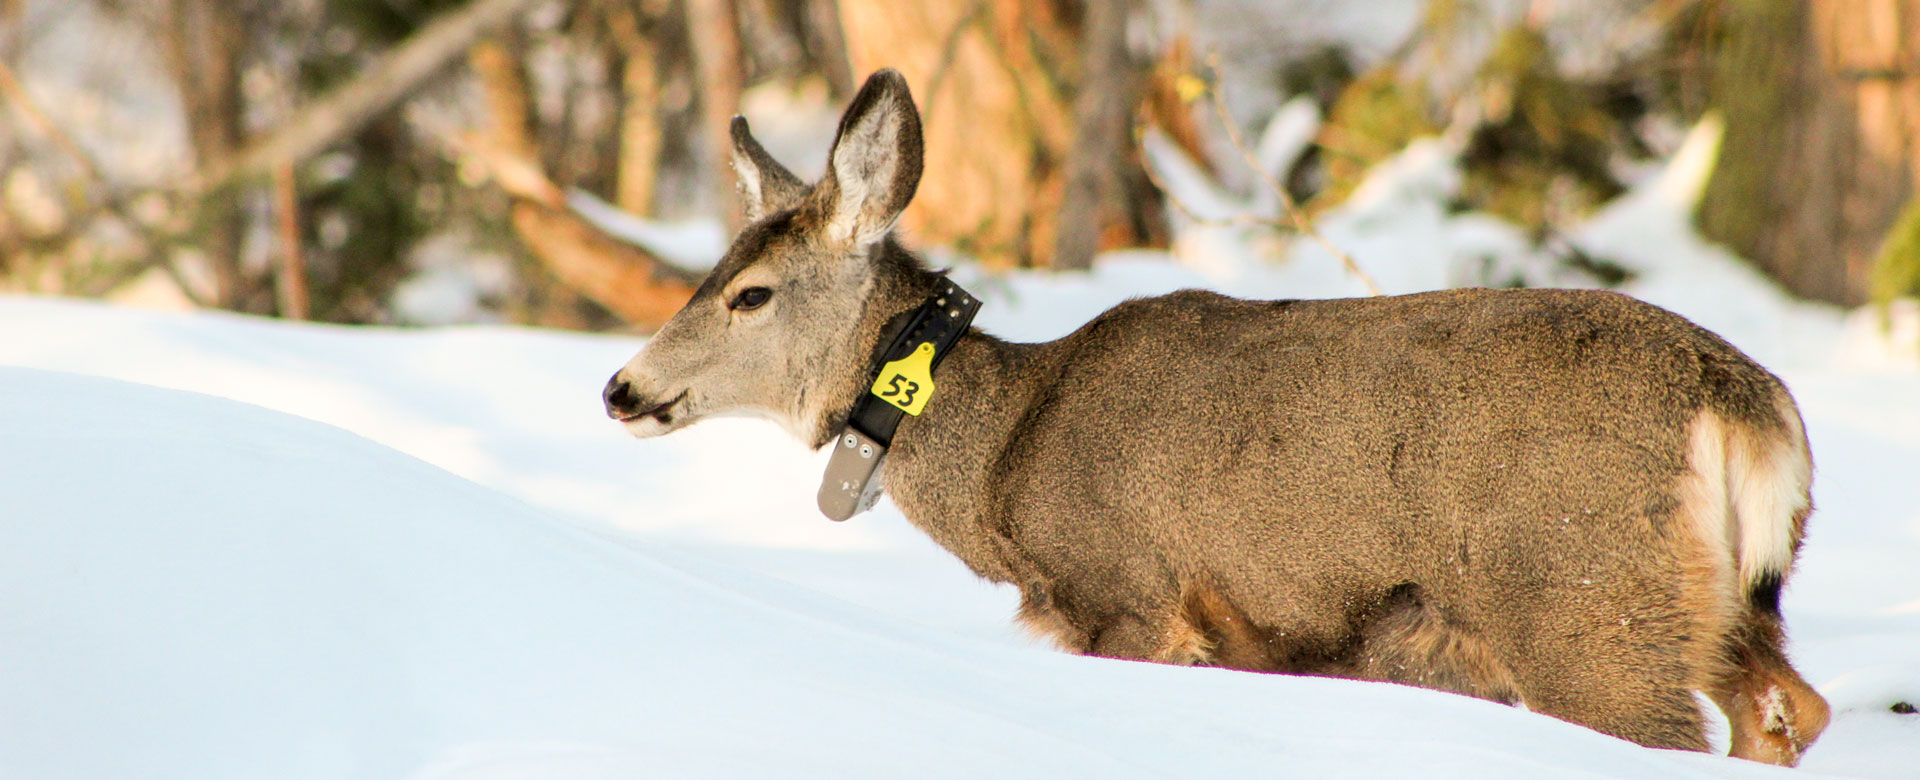 A mule deer in a snowy field